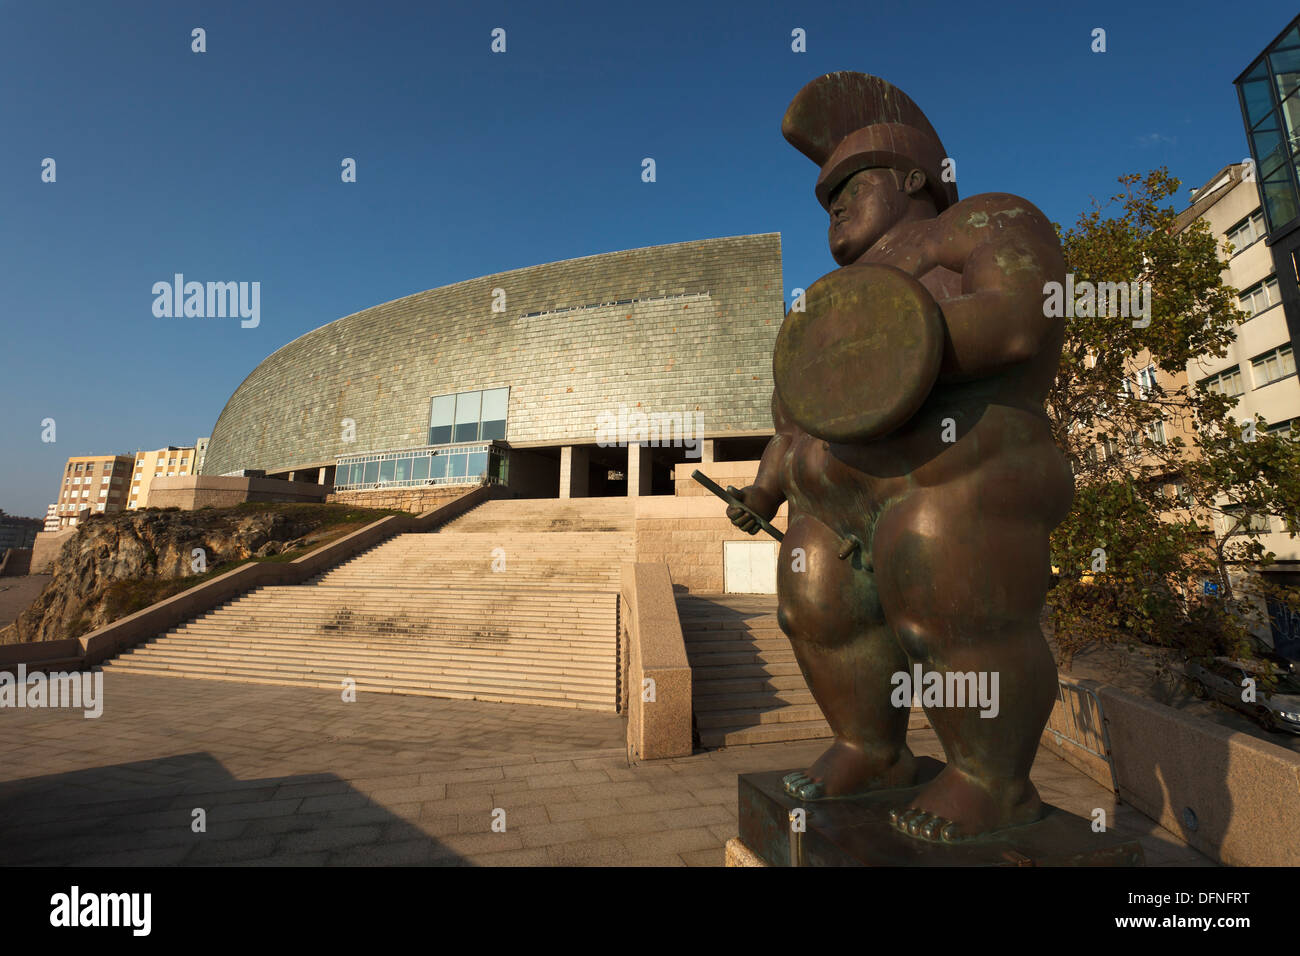 La estatua de bronce del guerrero romano por Fernando Botero, artista escultor, el Museo Domus, Casa del Hombre, la Casa de los humanos de regreso, ARC Foto de stock